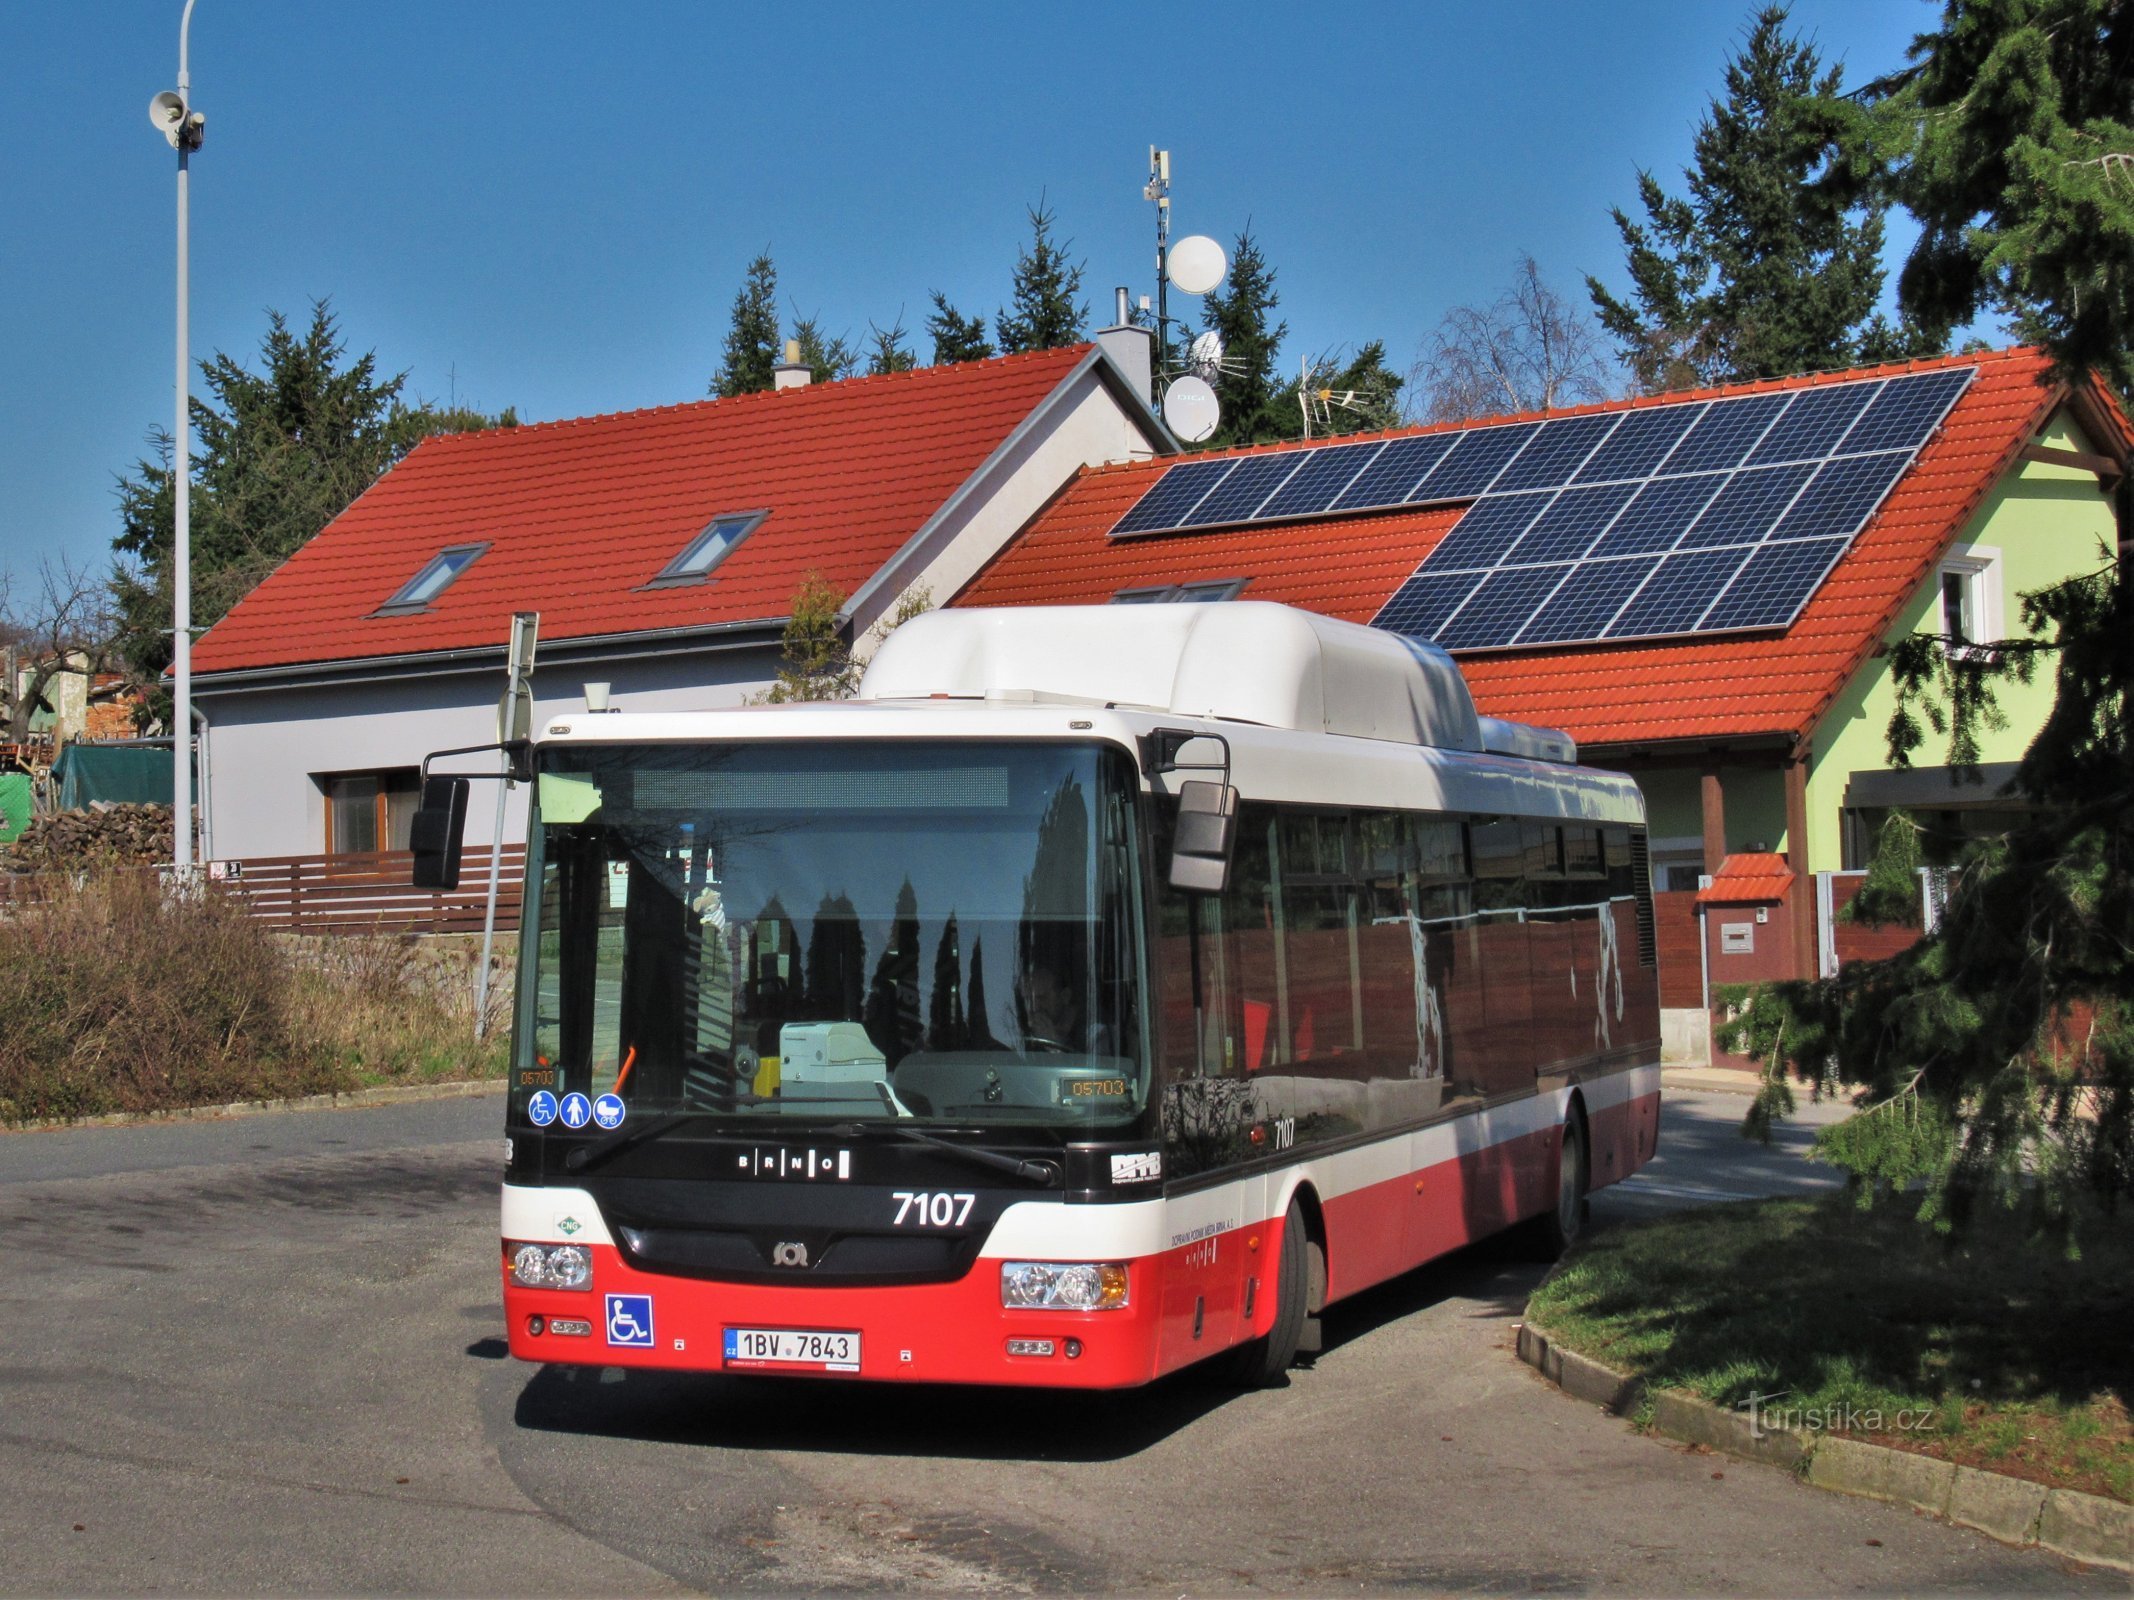 Az 57-es busz Útěchov végállomása